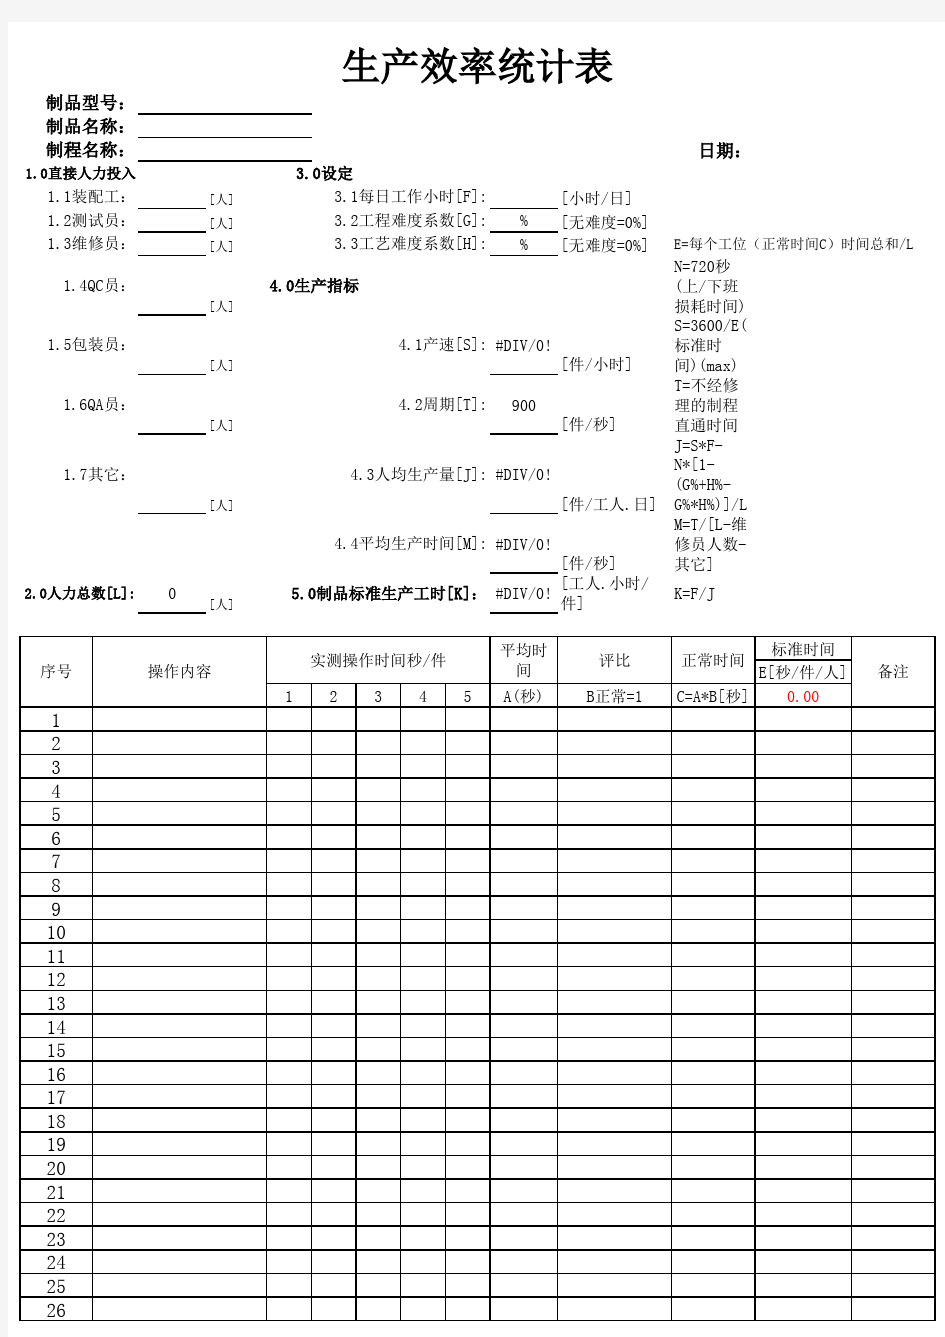 生产效率统计表-带公式-直接使用【精校】.xls